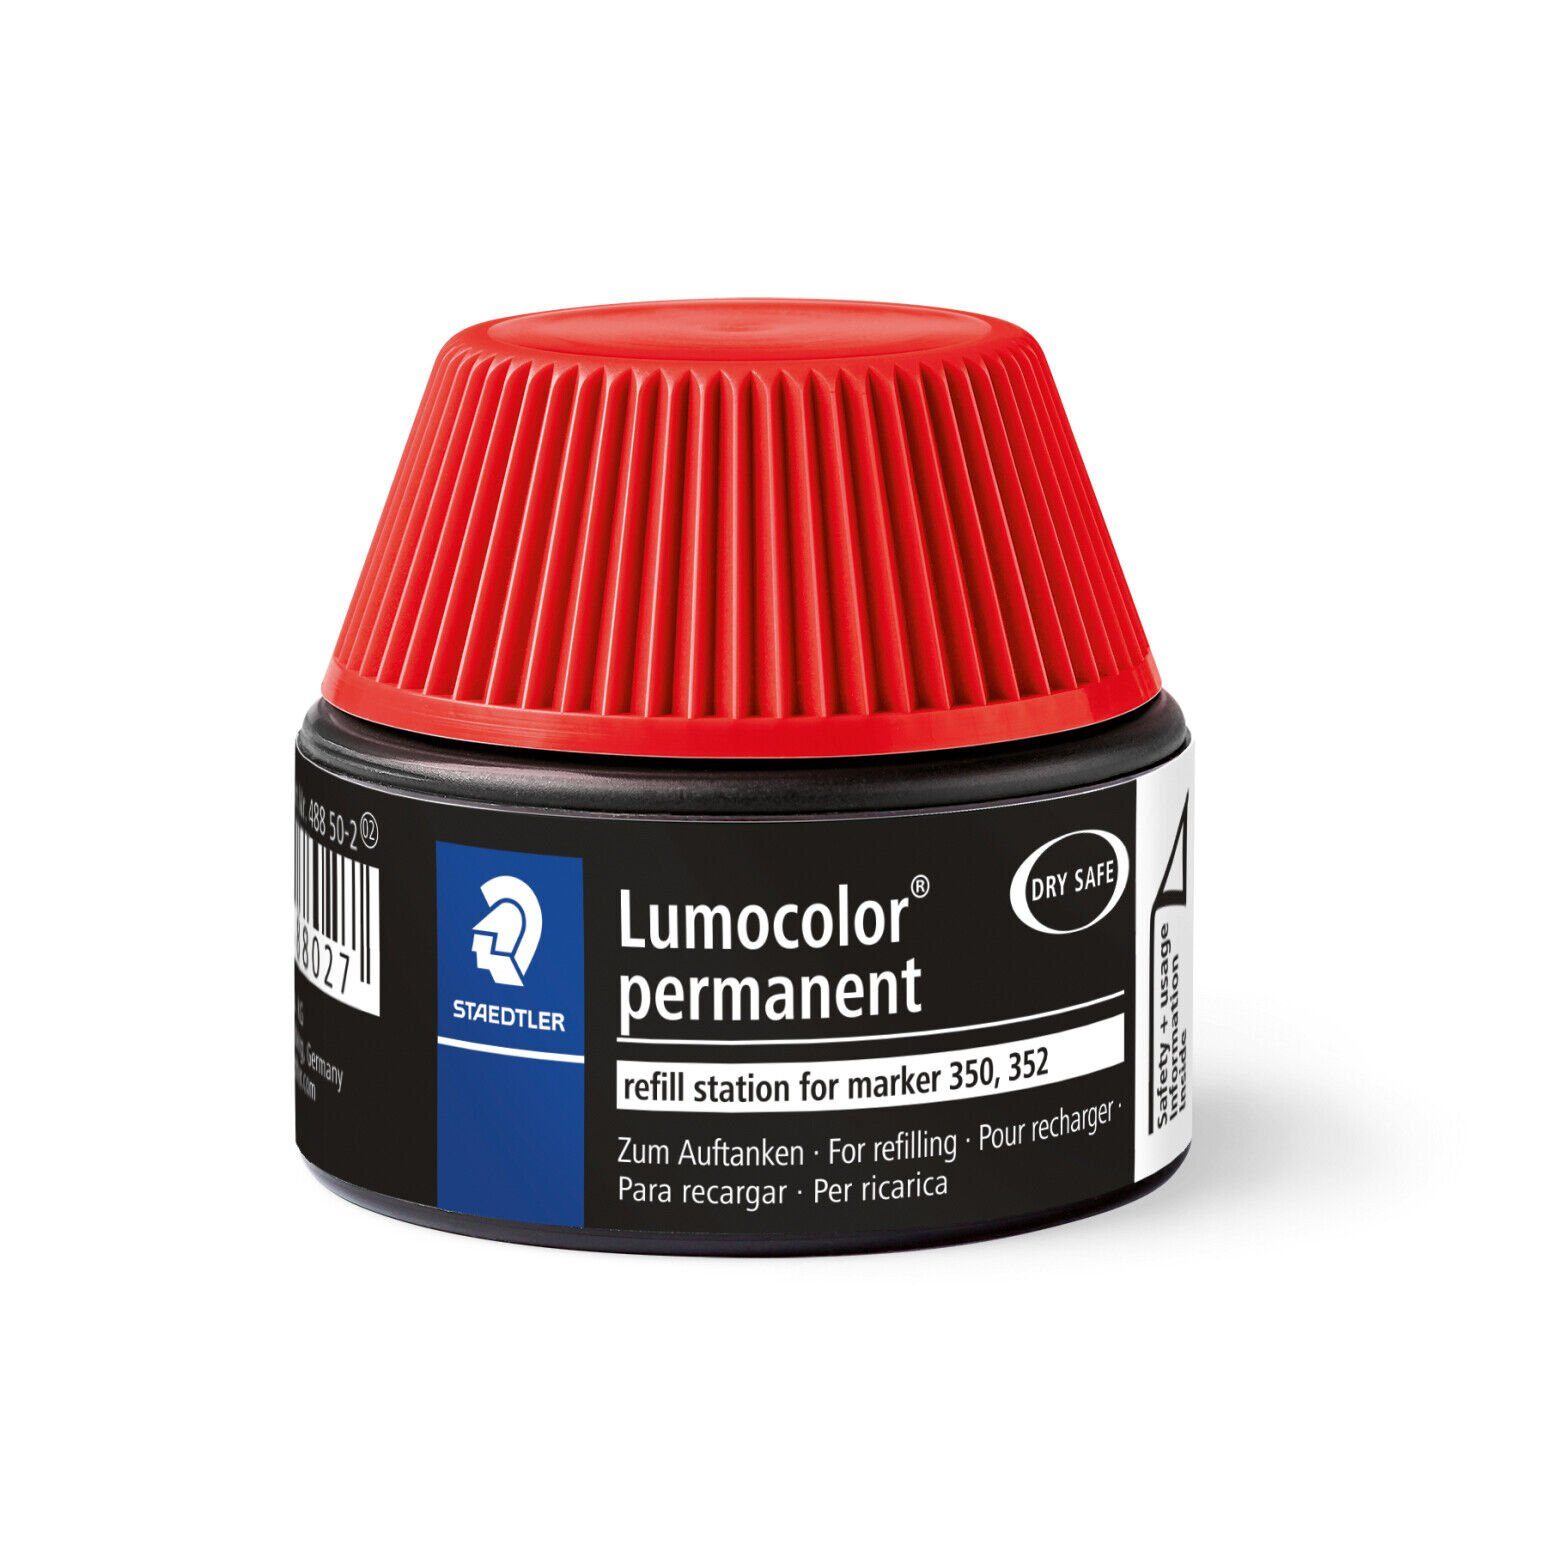 STAEDTLER Lumocolor rot marker permanent 488 lichtbeständig Marker 50-2, Nachfülltinte STAEDTLER